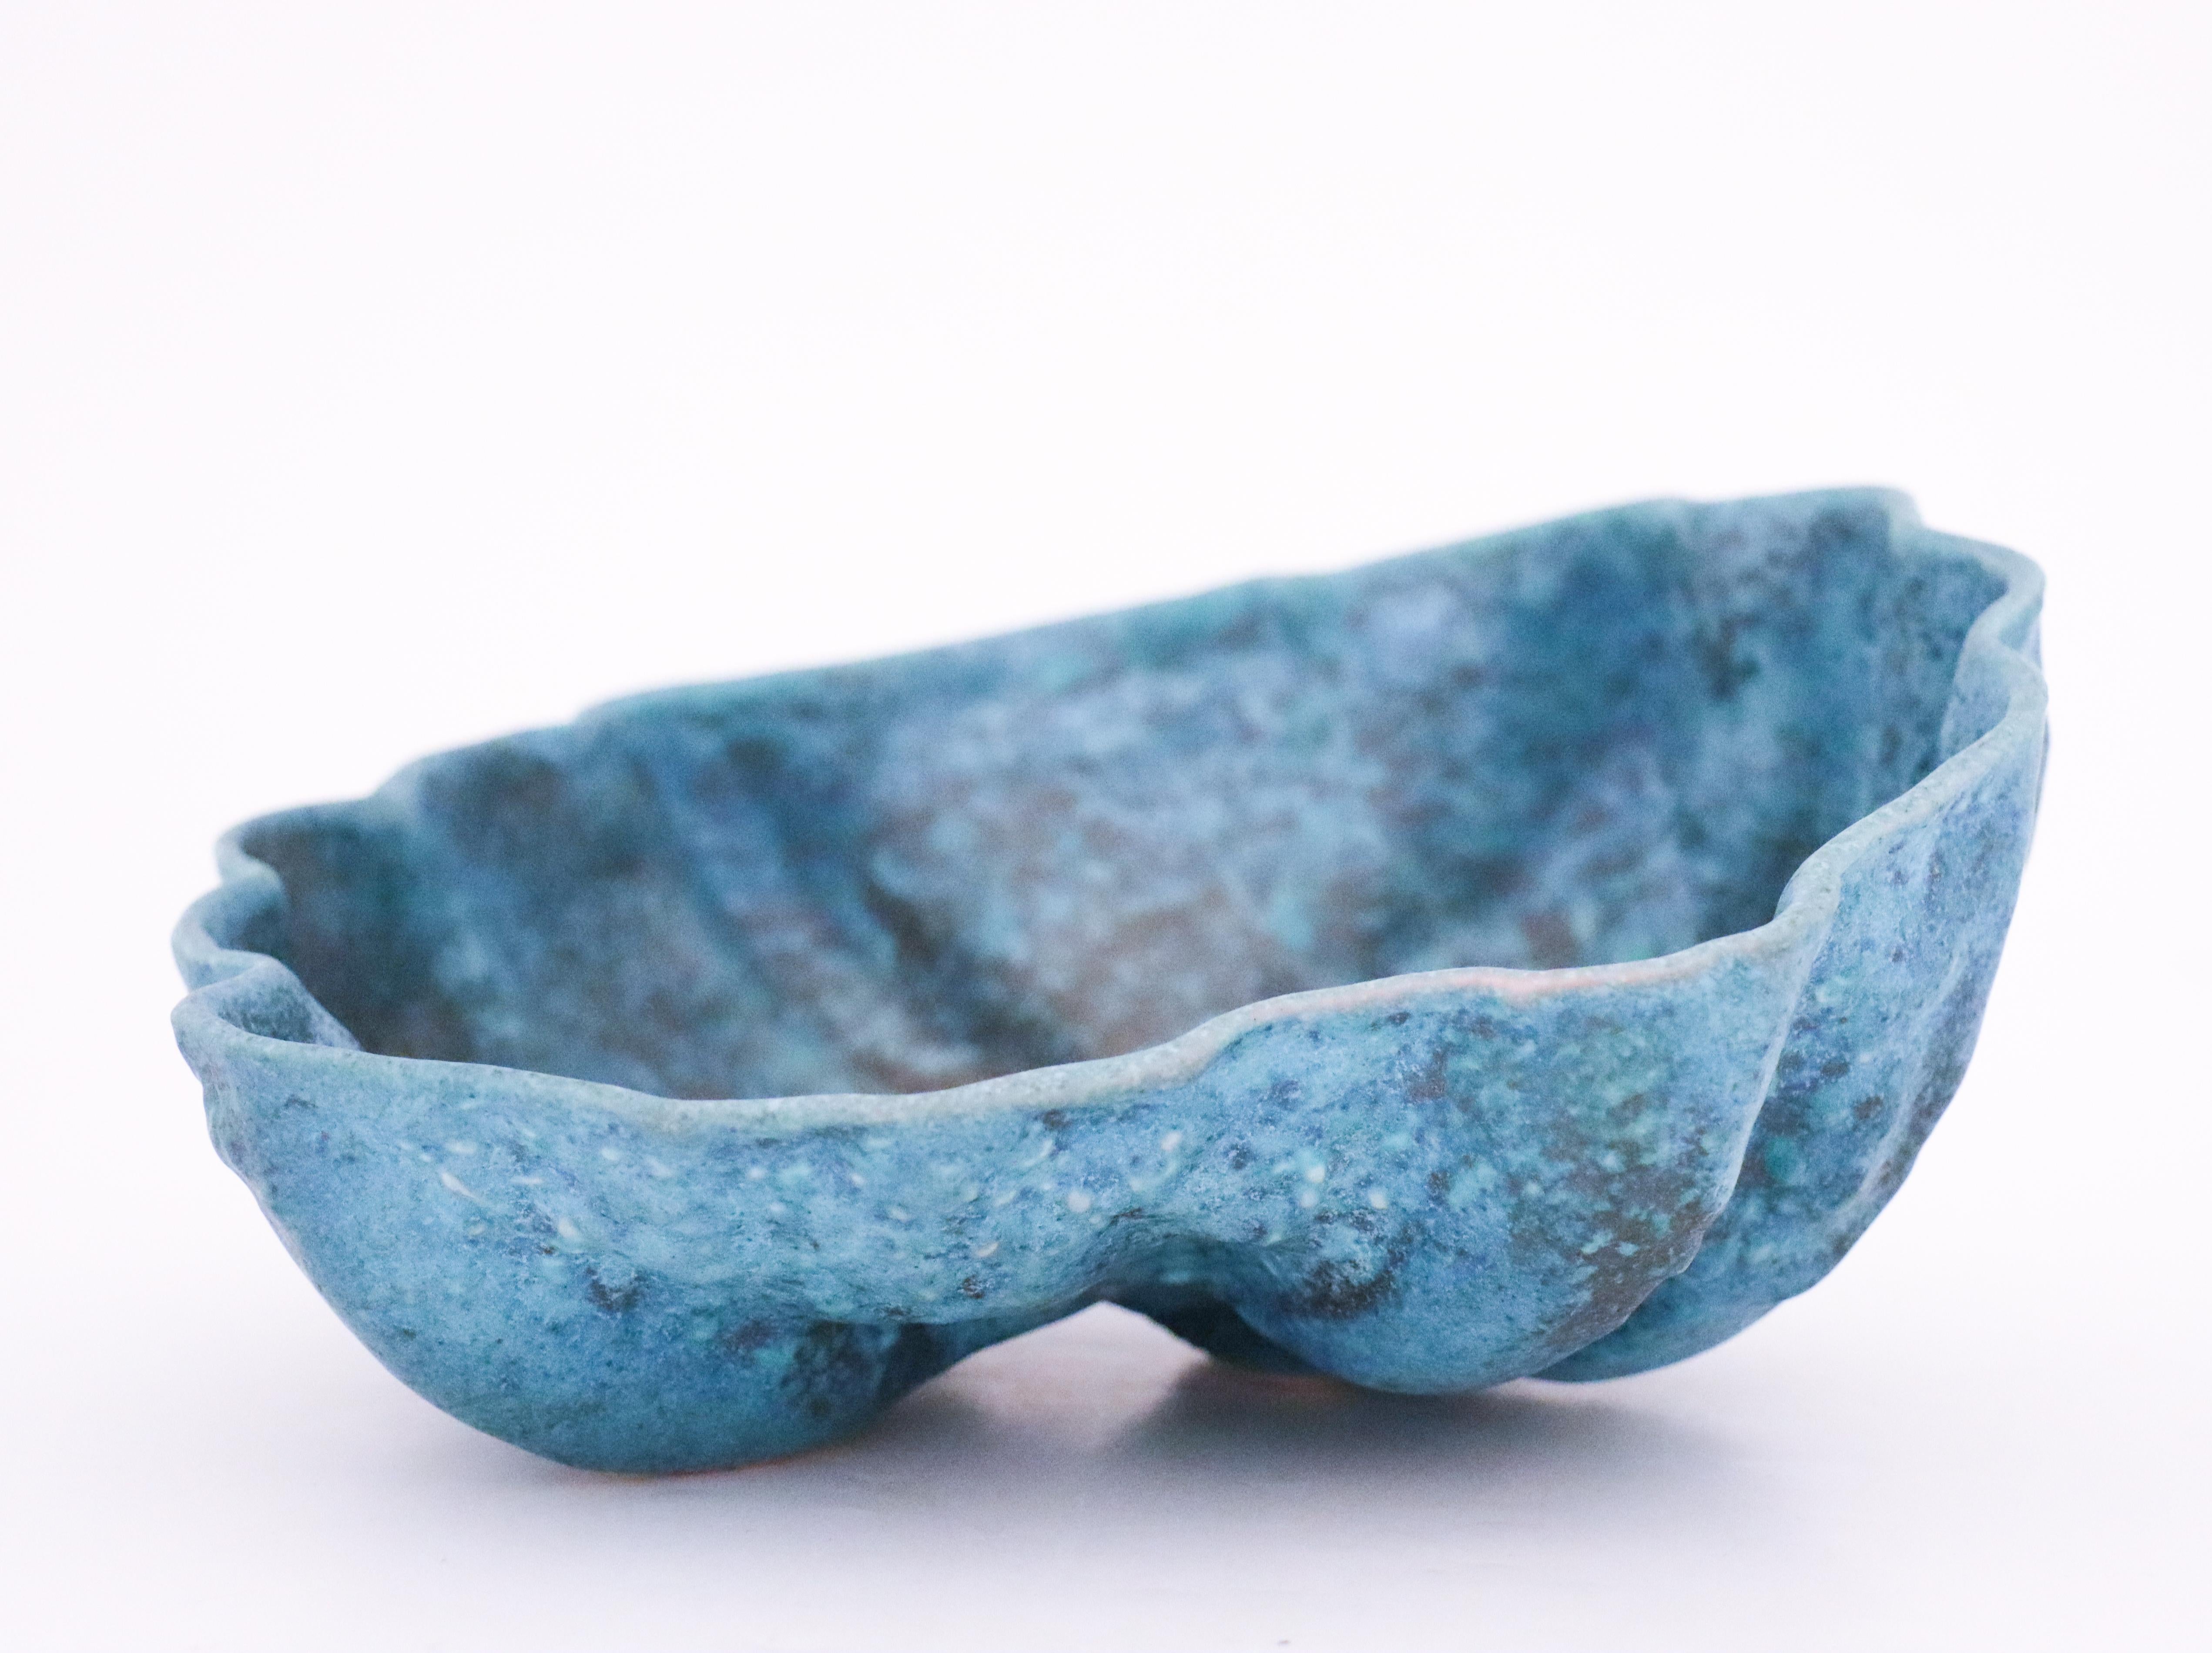 Ceramic Blue Bowl, Lovely Organic Shape Designed by Birgitta Watz at Rörstrand 1988